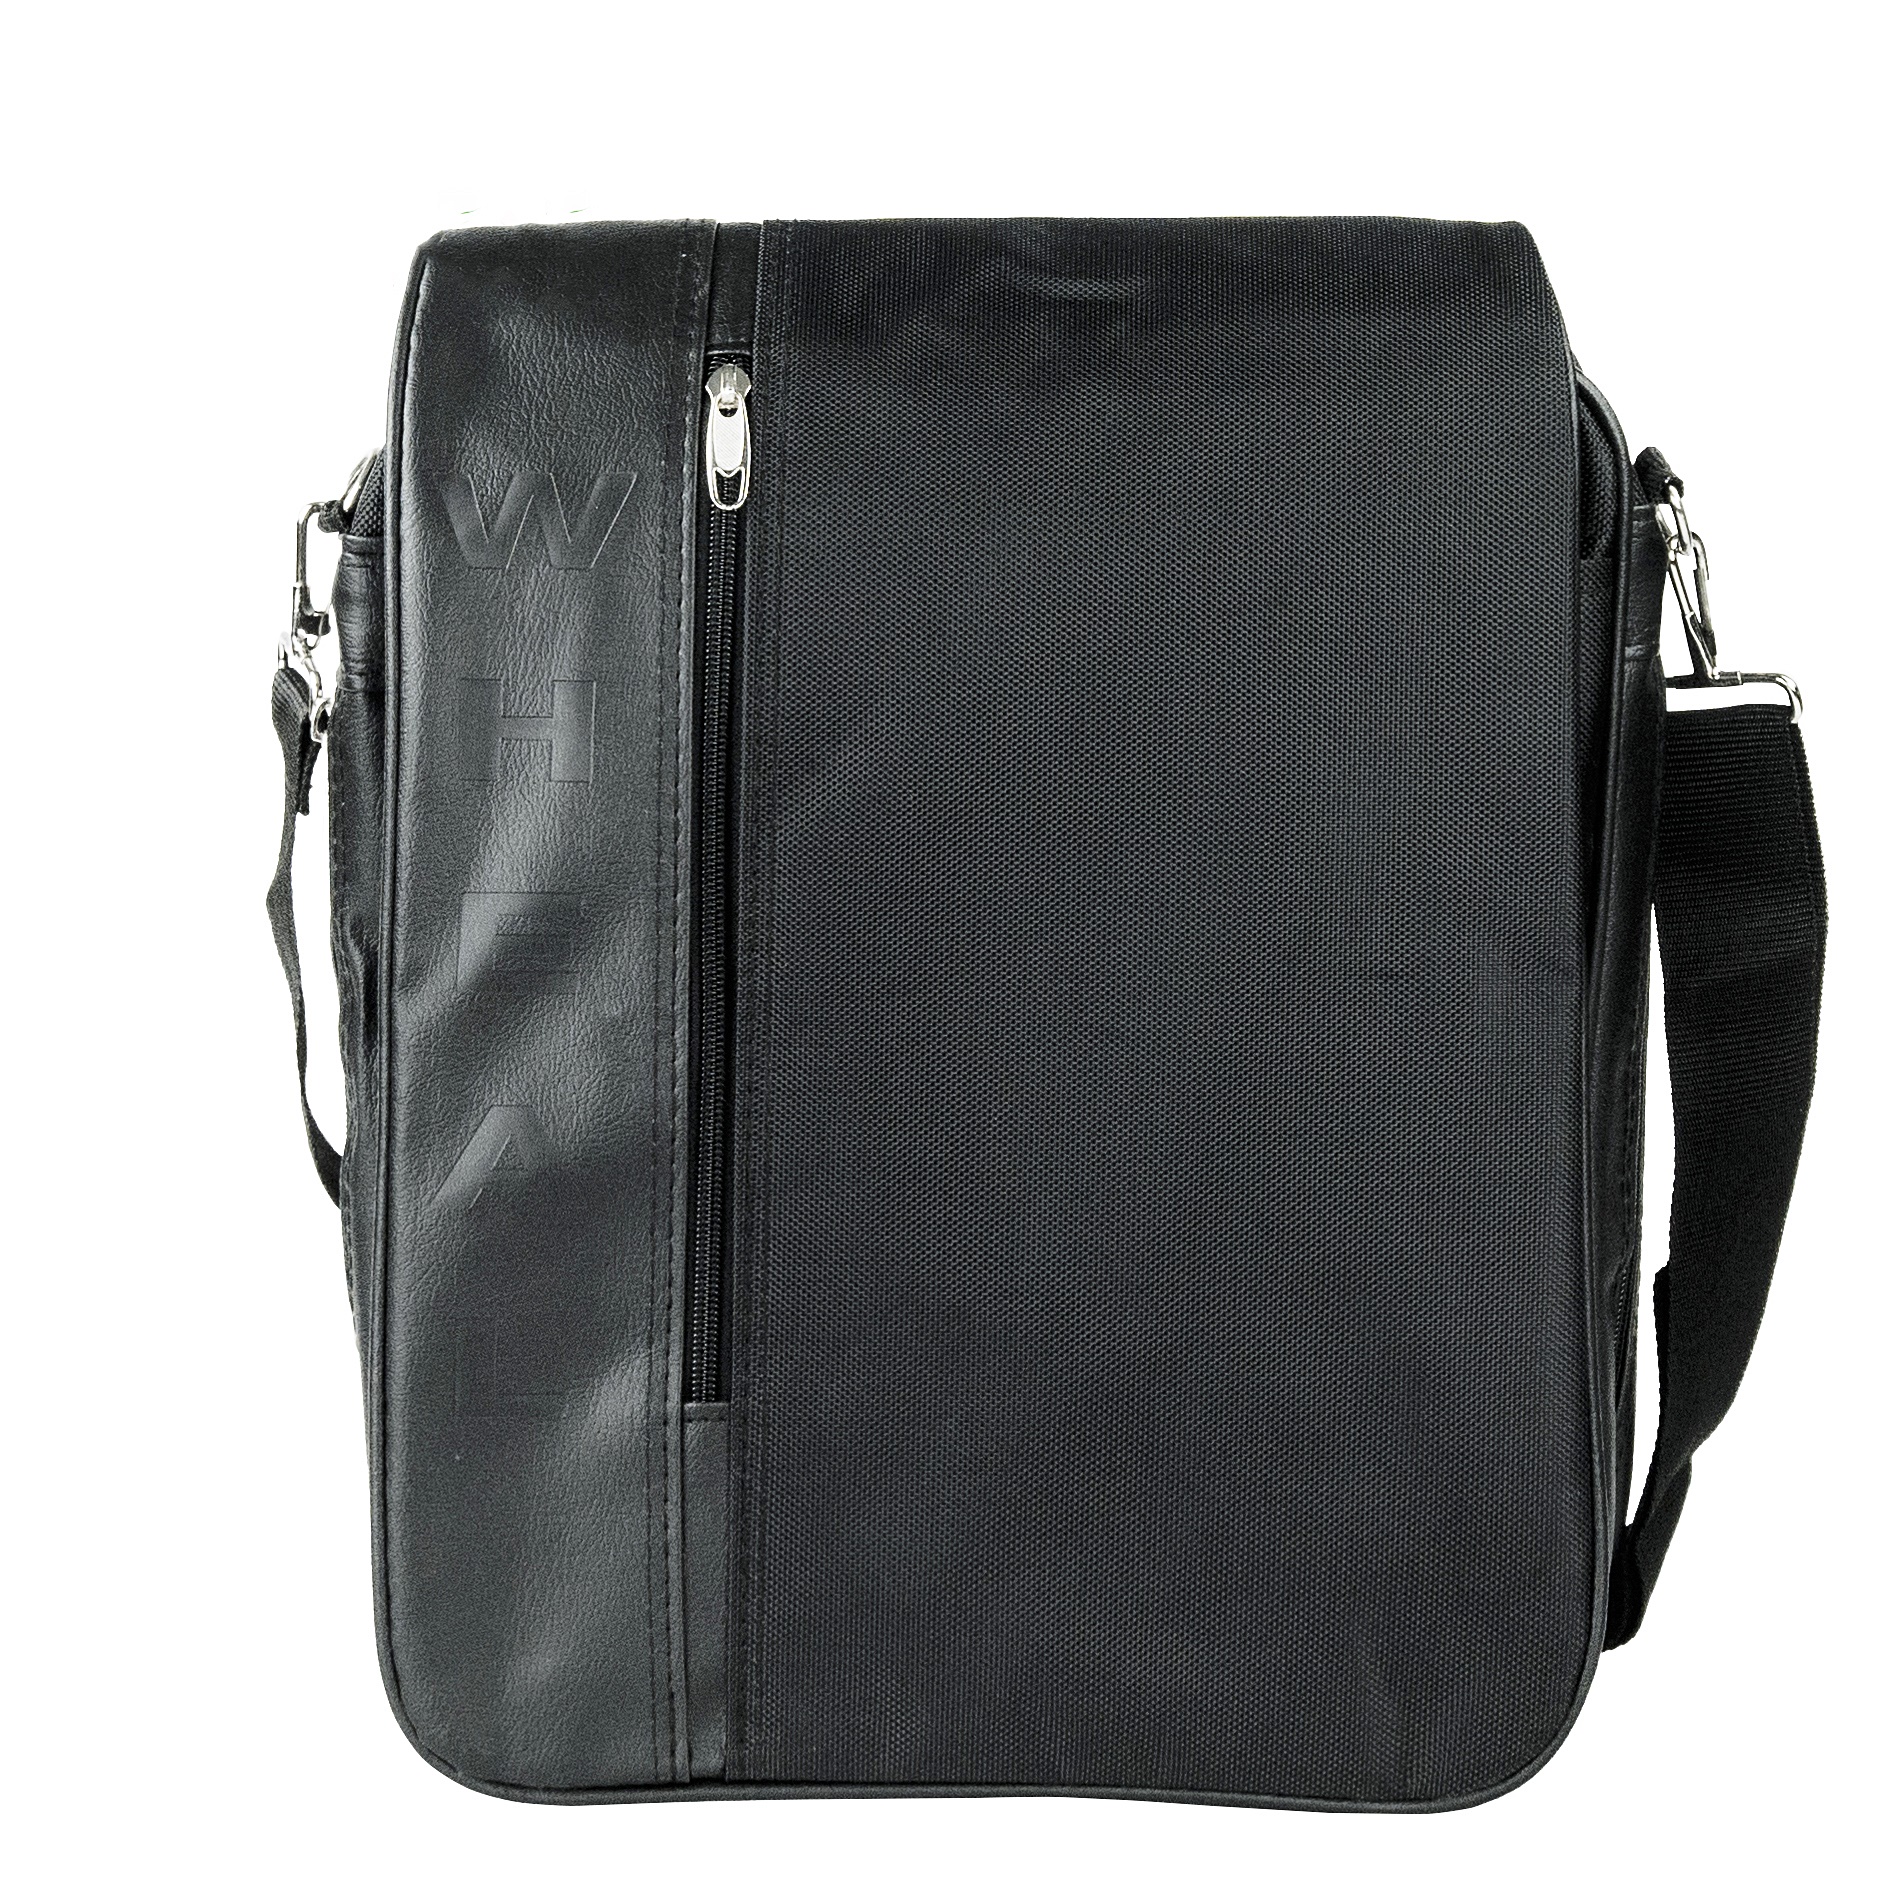 Shop 899 กระเป๋าสะพายข้าง Wheal กระเป๋าสะพายไหล่ กระเป๋าใส่เอกสาร ขนาด 14 นิ้ว รุ่น F2009 (Black)